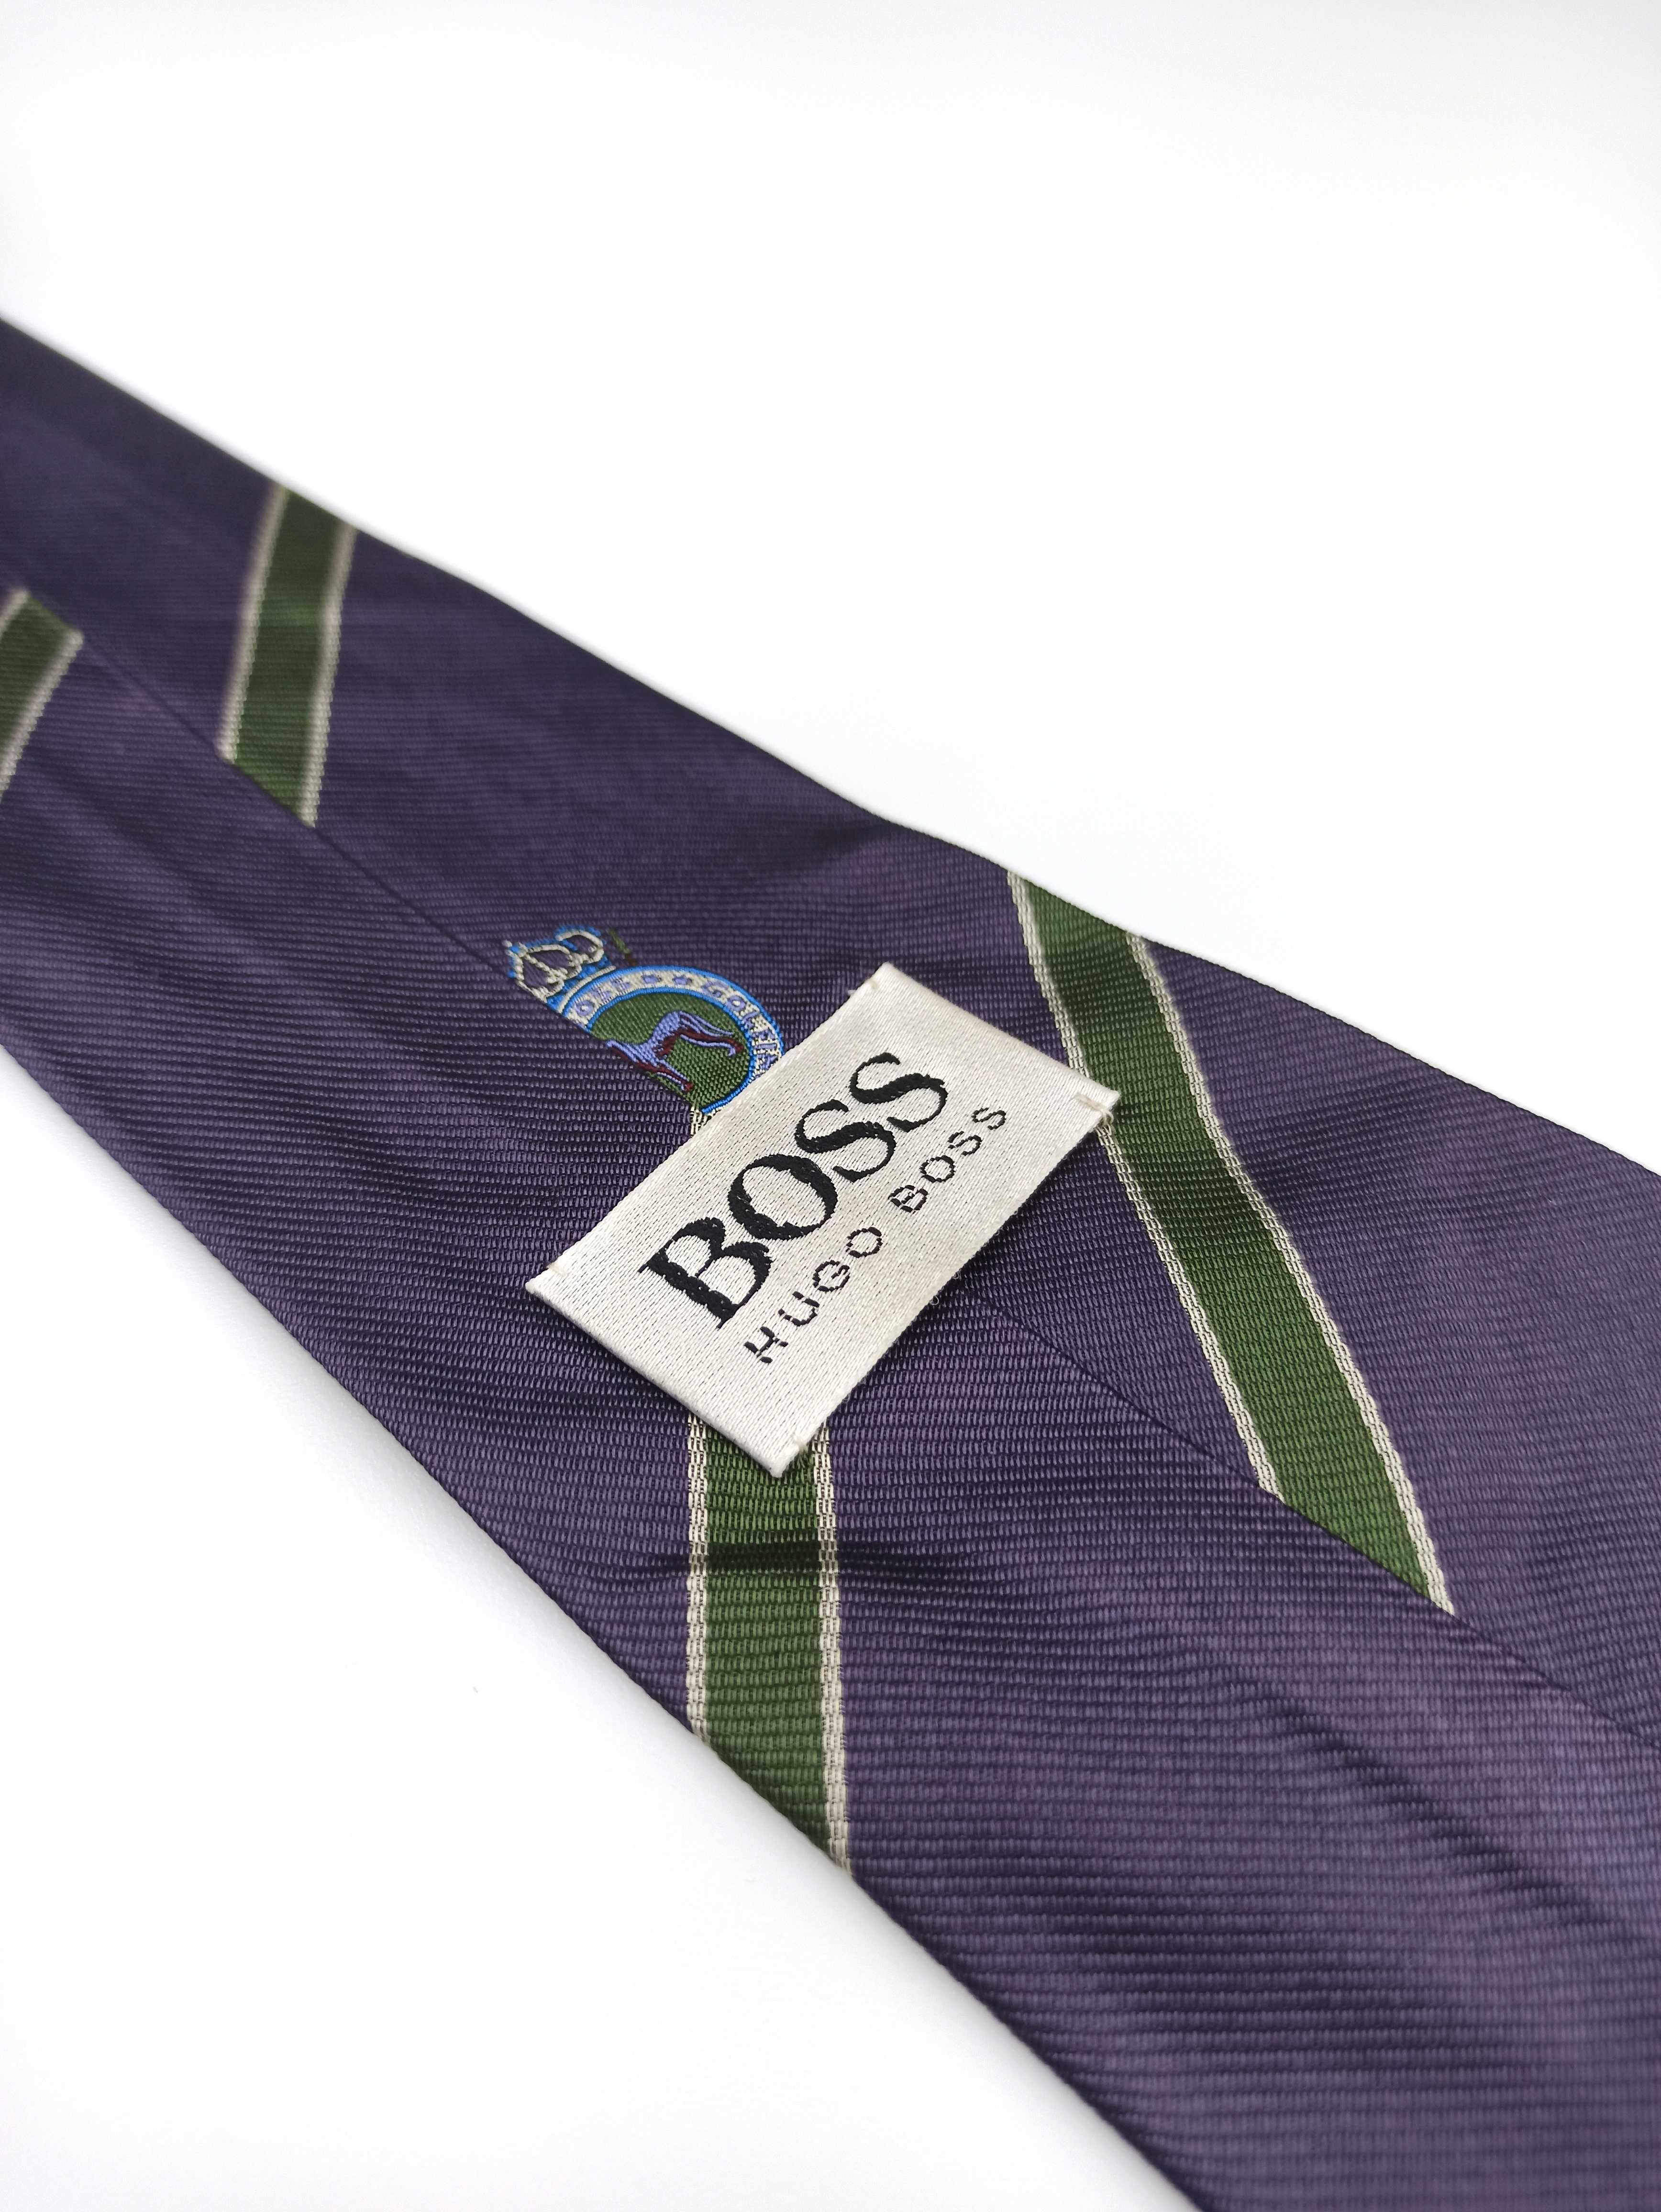 Hugo Boss fioletowy jedwabny krawat w paski vintage ulu46